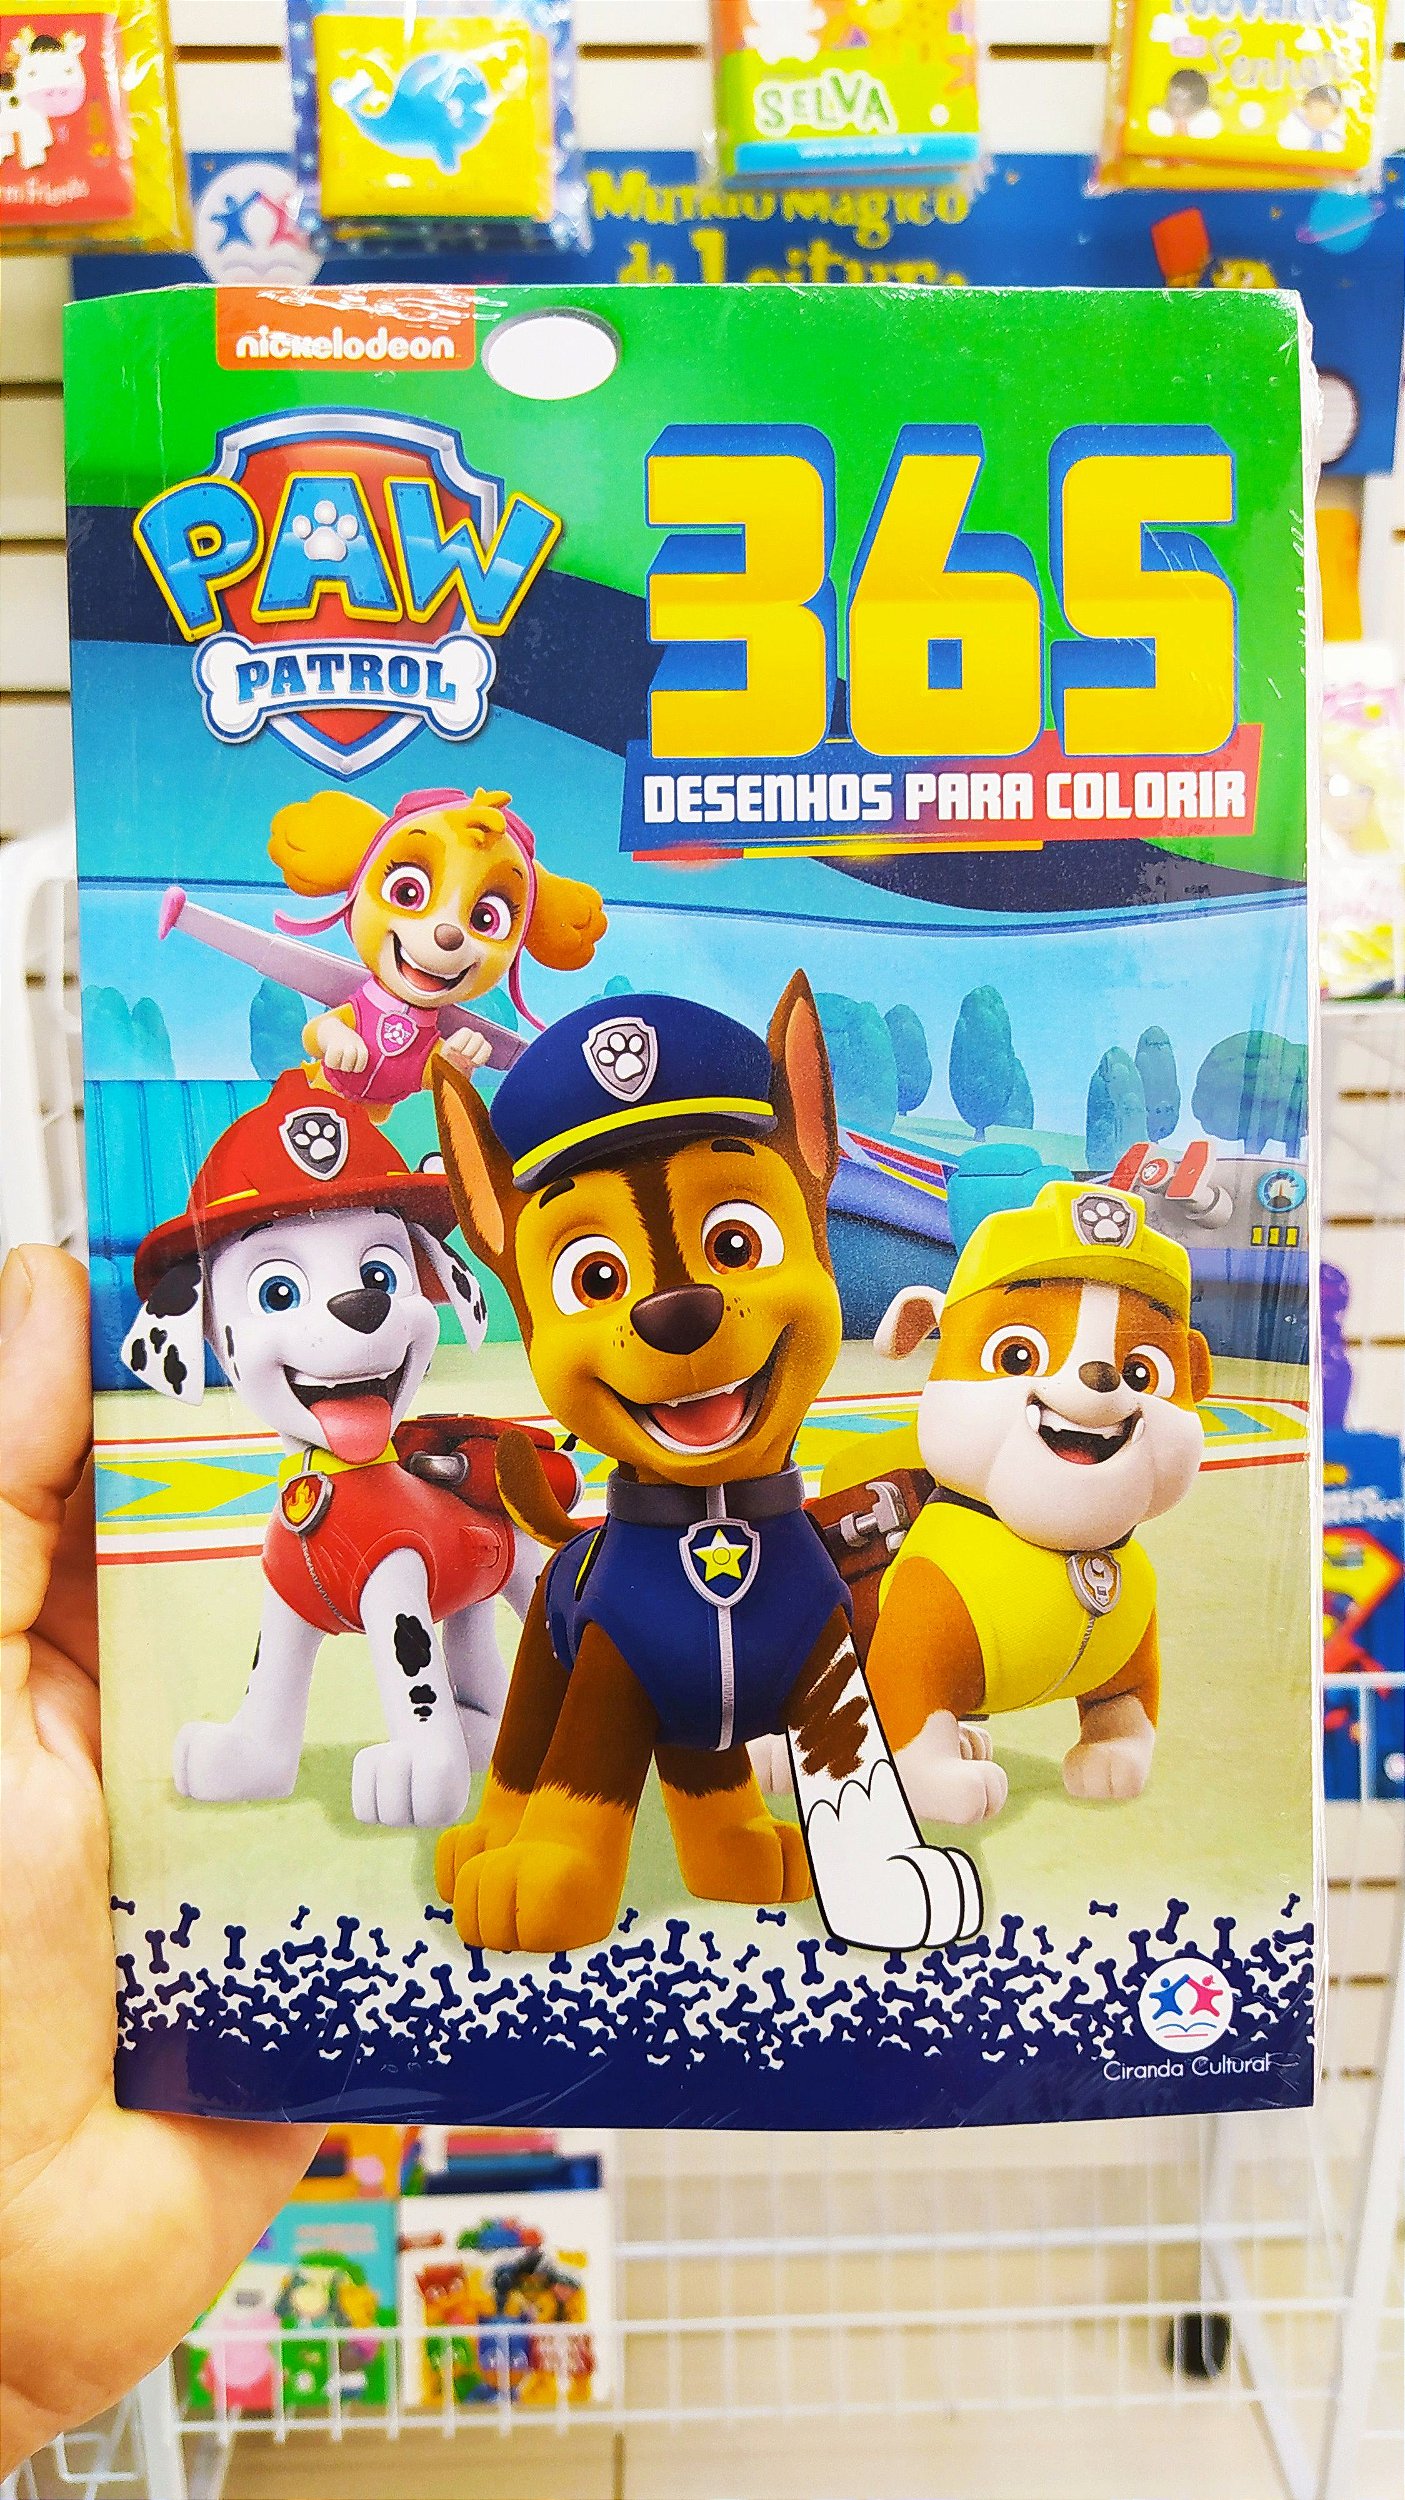 365 Desenhos para colorir Patrulha Canina - Ciranda Cultural